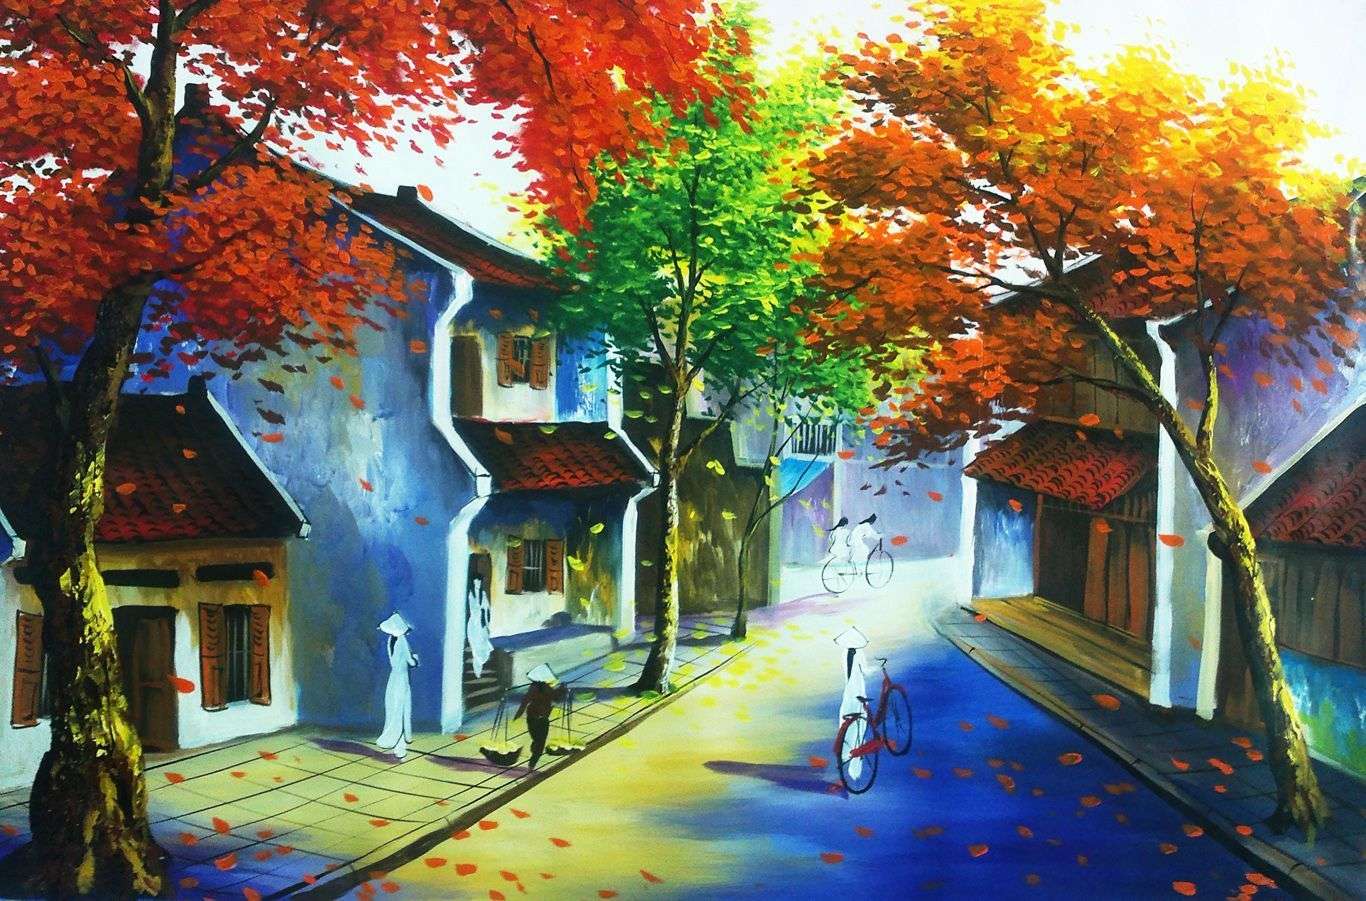 Tranh phong cảnh mùa thu VH059  Việt Hùng Gallery  Chuyên vẽ Tranh SƠN  DẦU CAO CẤP HIỆN ĐẠI